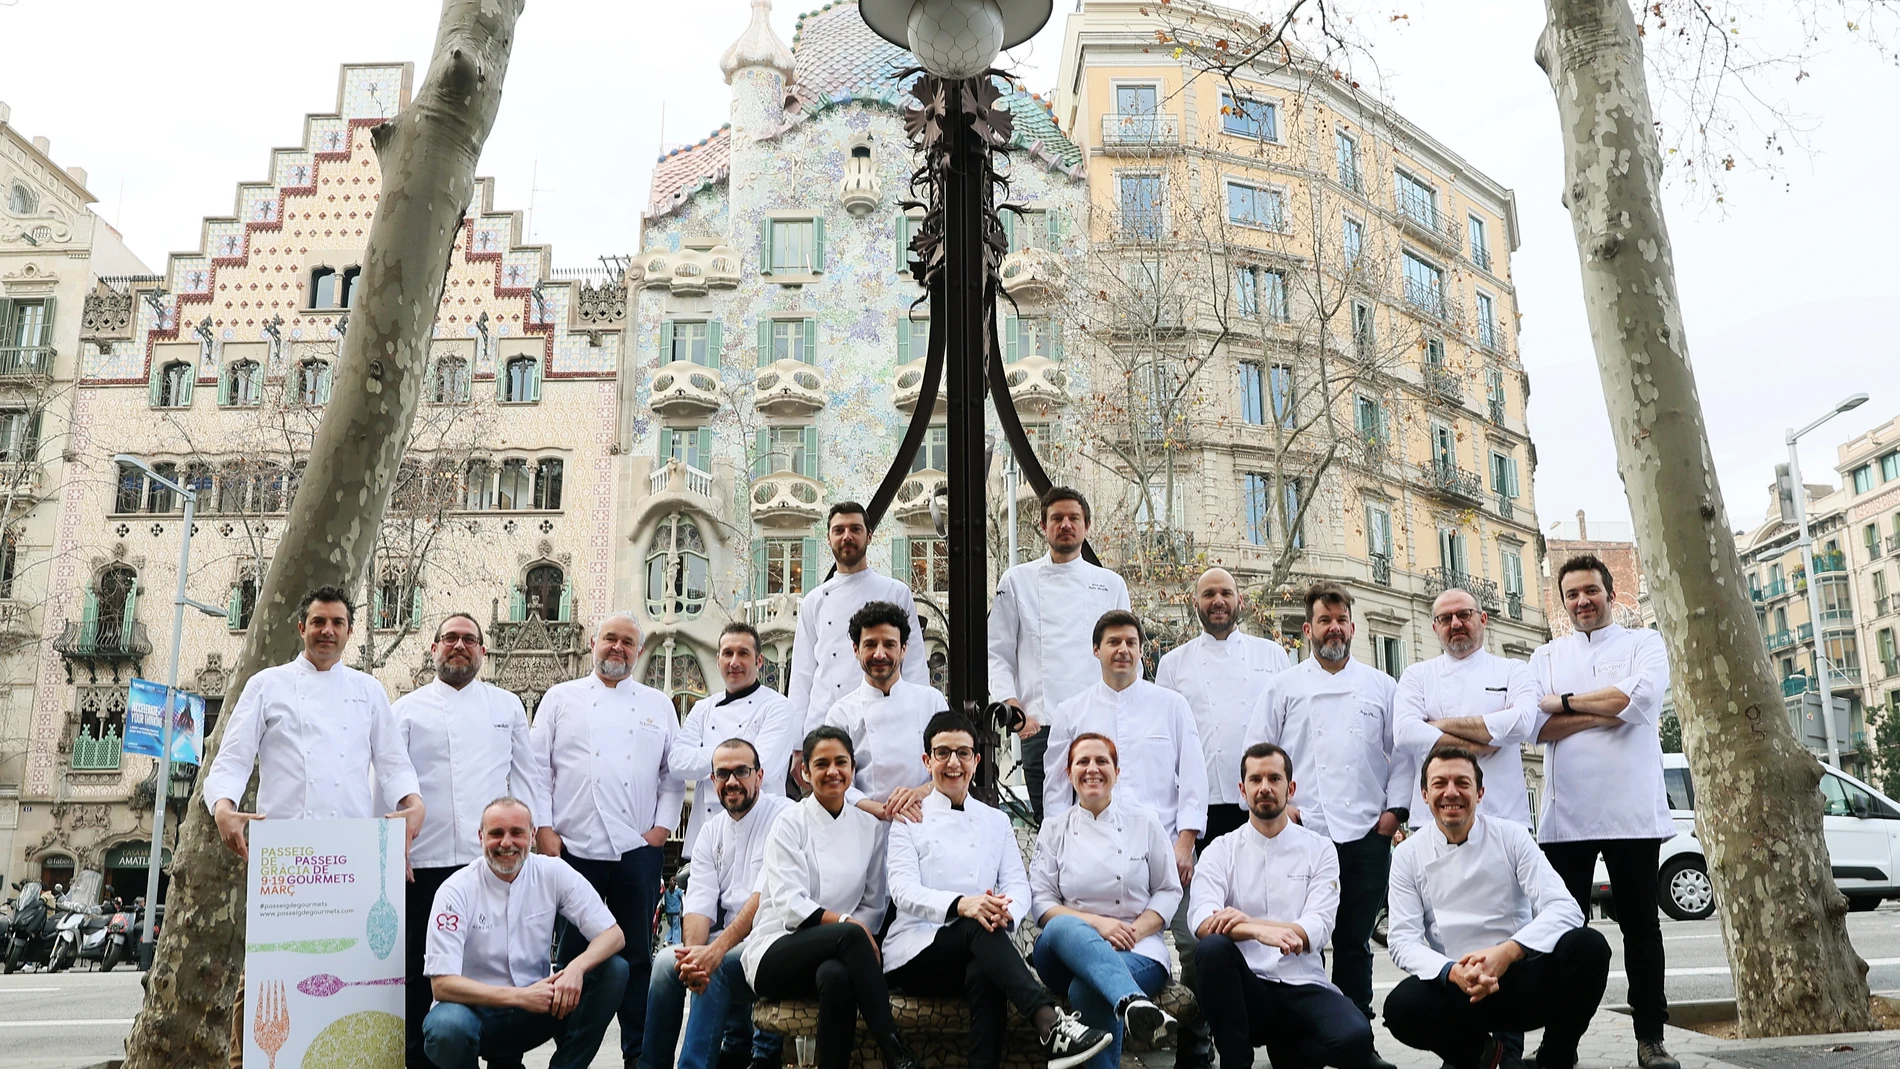 Los chefs de los 21 restaurantes que participarán en la sexta edición de Passeig dels Gourmets, entre los que se encuentra Carme Ruscalleda, madrina del evento